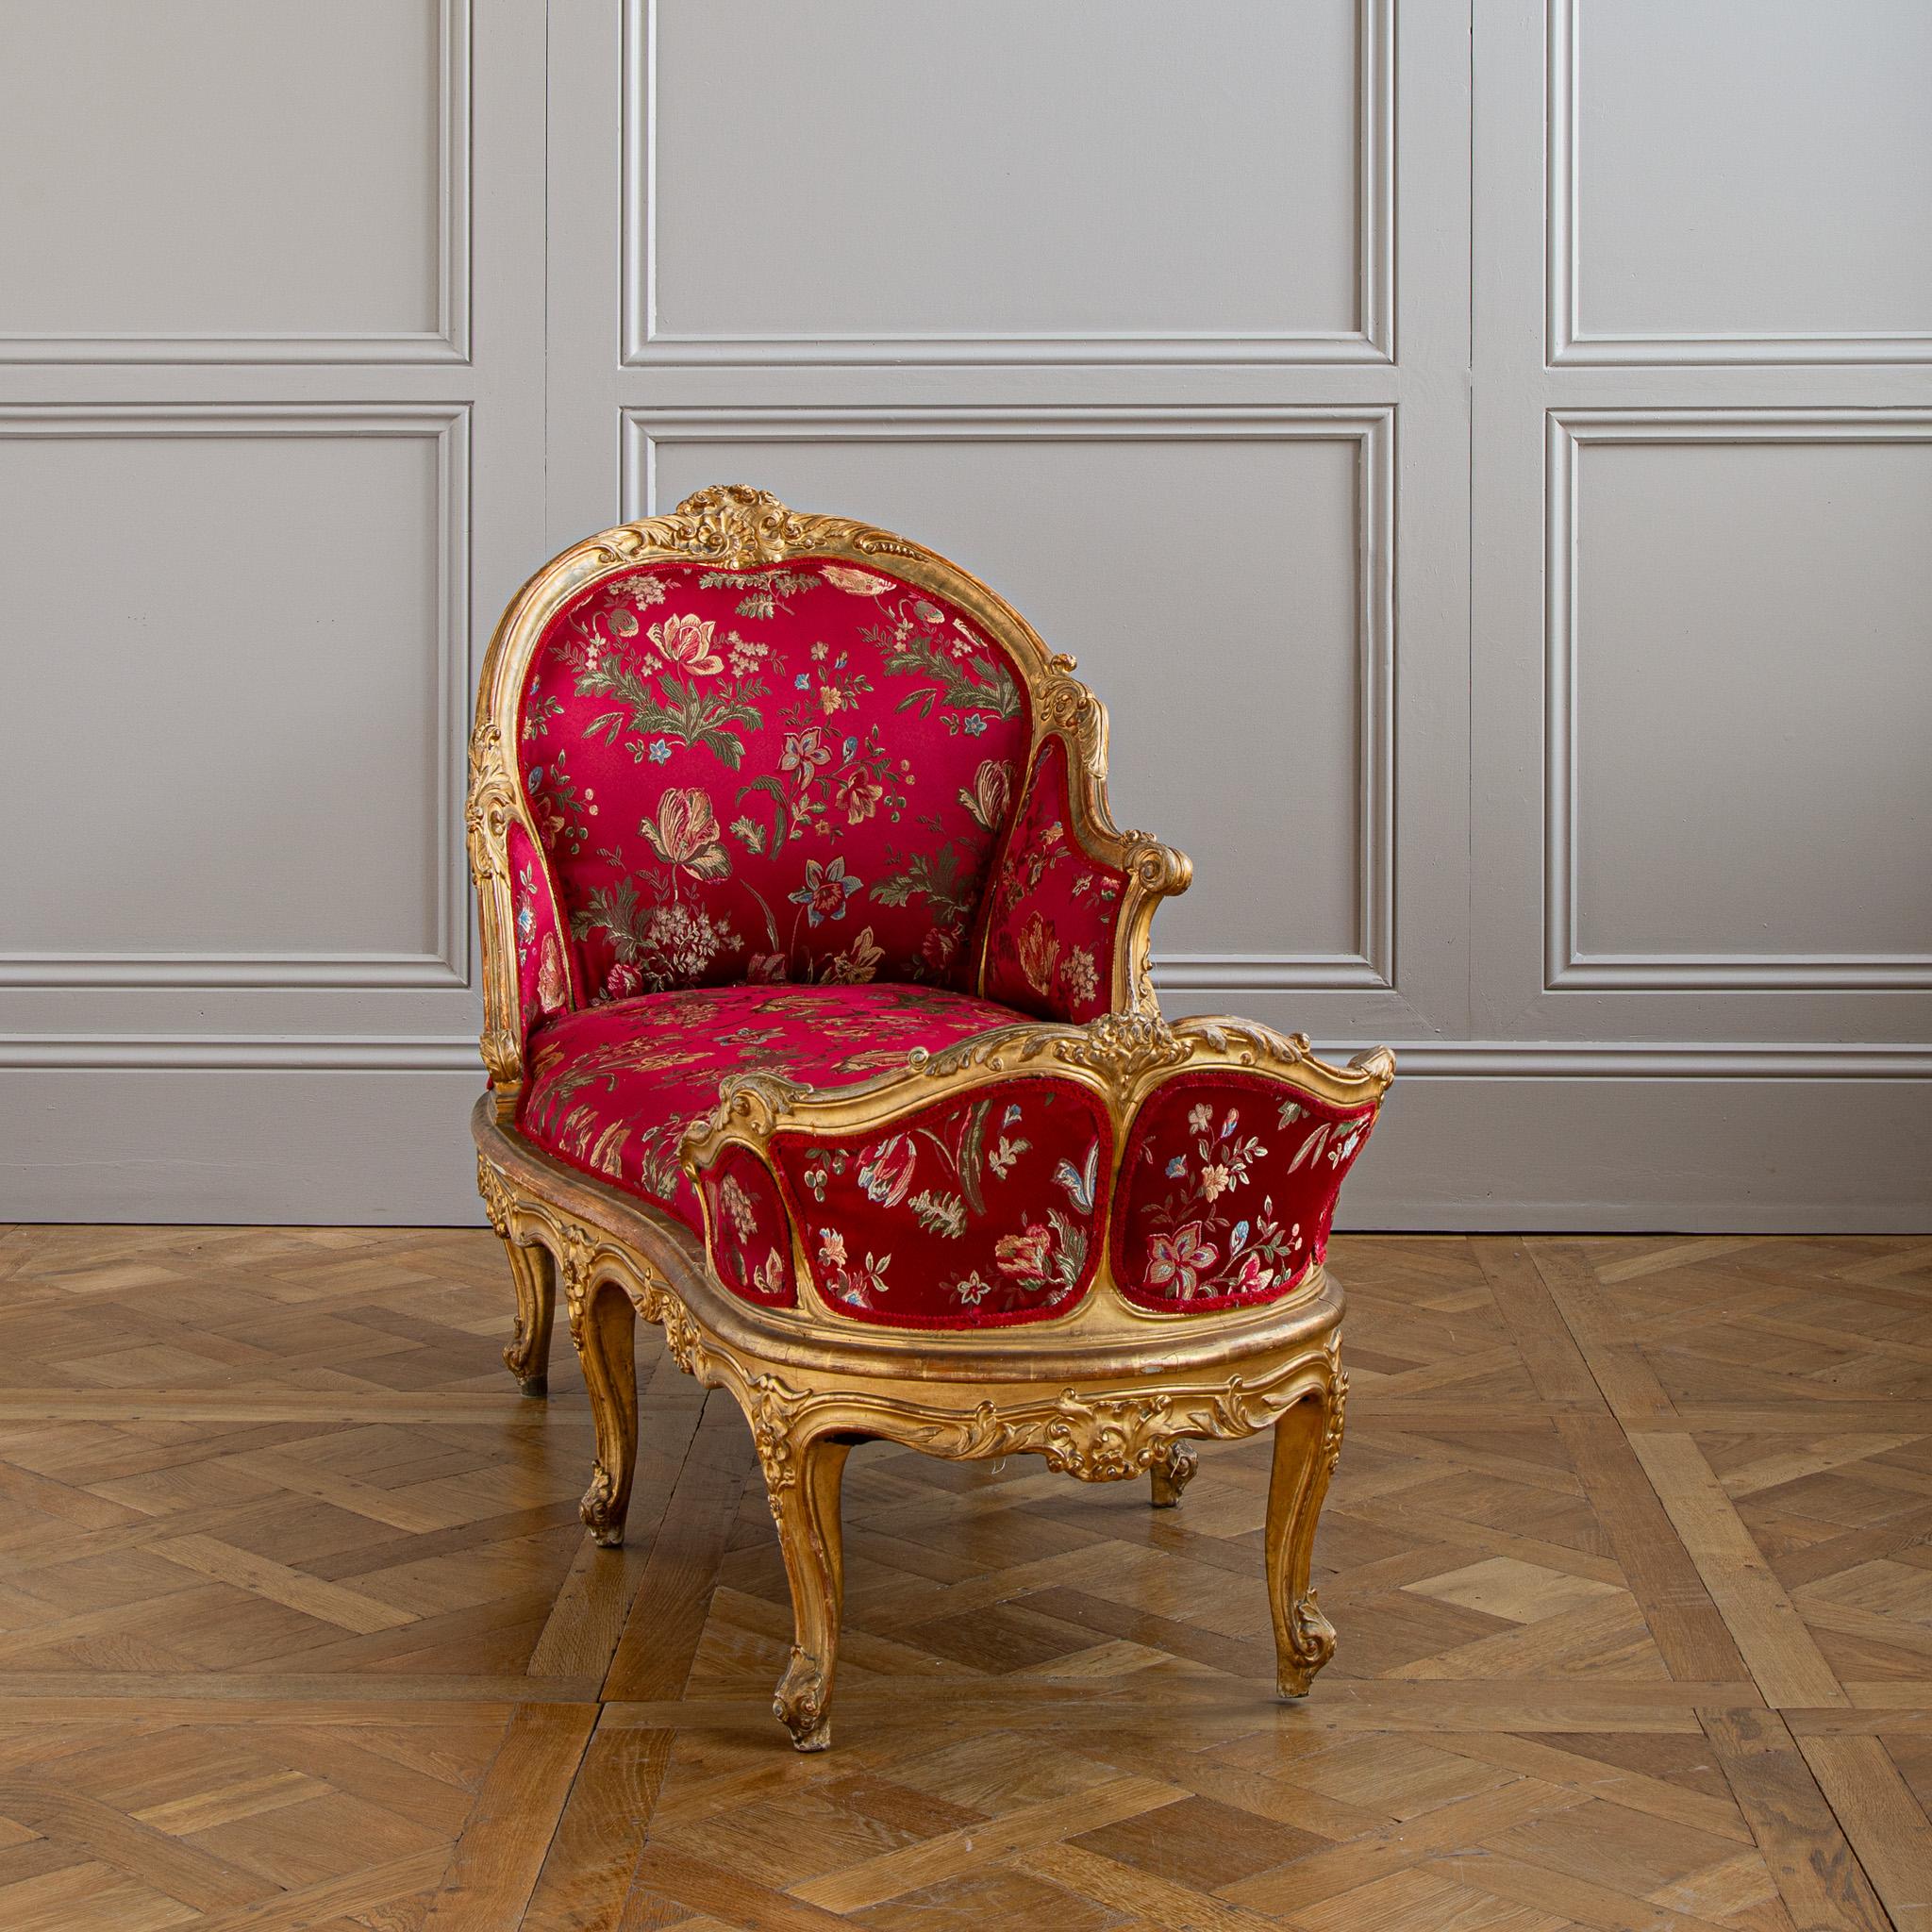 Cette très élégante chaise longue, datant de 1880, provient de Toscane, en Italie. Finement sculpté dans le style LXV, il comprend un accoudoir sur un côté qui ajoute à la forme générale de la pièce et à sa prestance sous tous les angles. La chaise